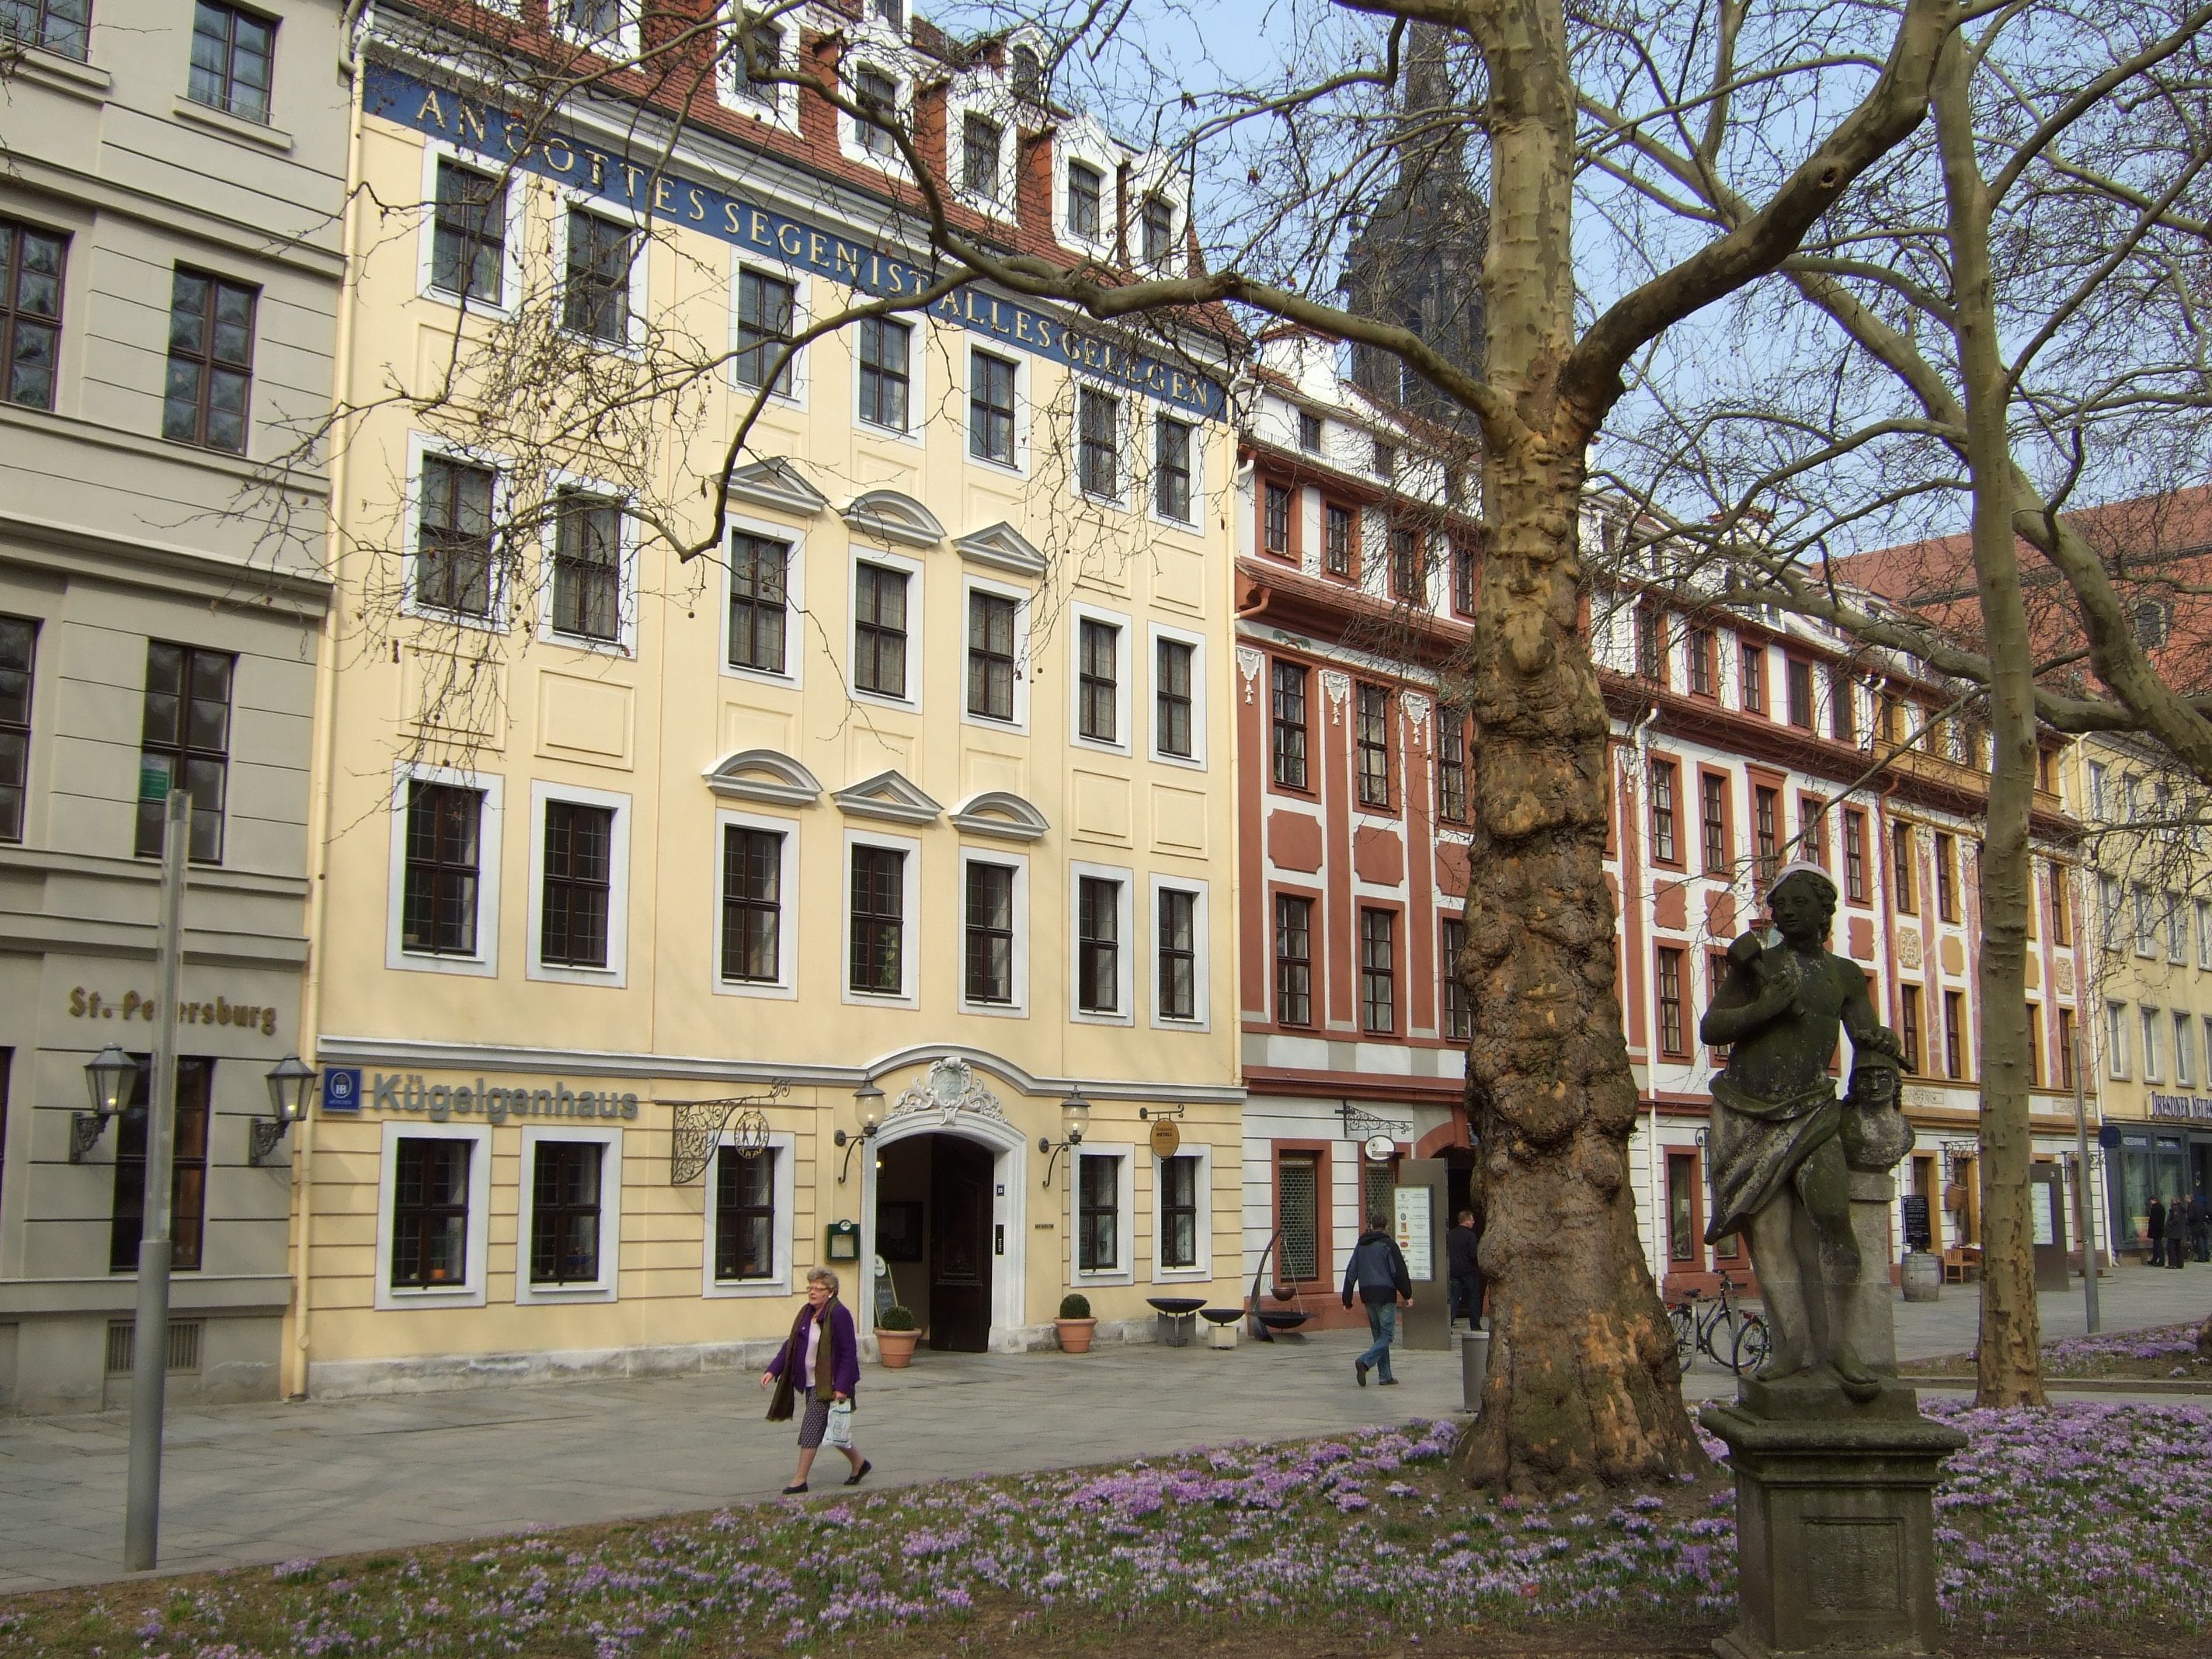 Das Kügelgenhaus auf der Dresdner Hauptstraße mit dem Schriftzug "An Gottes Segen ist alles gelegen".